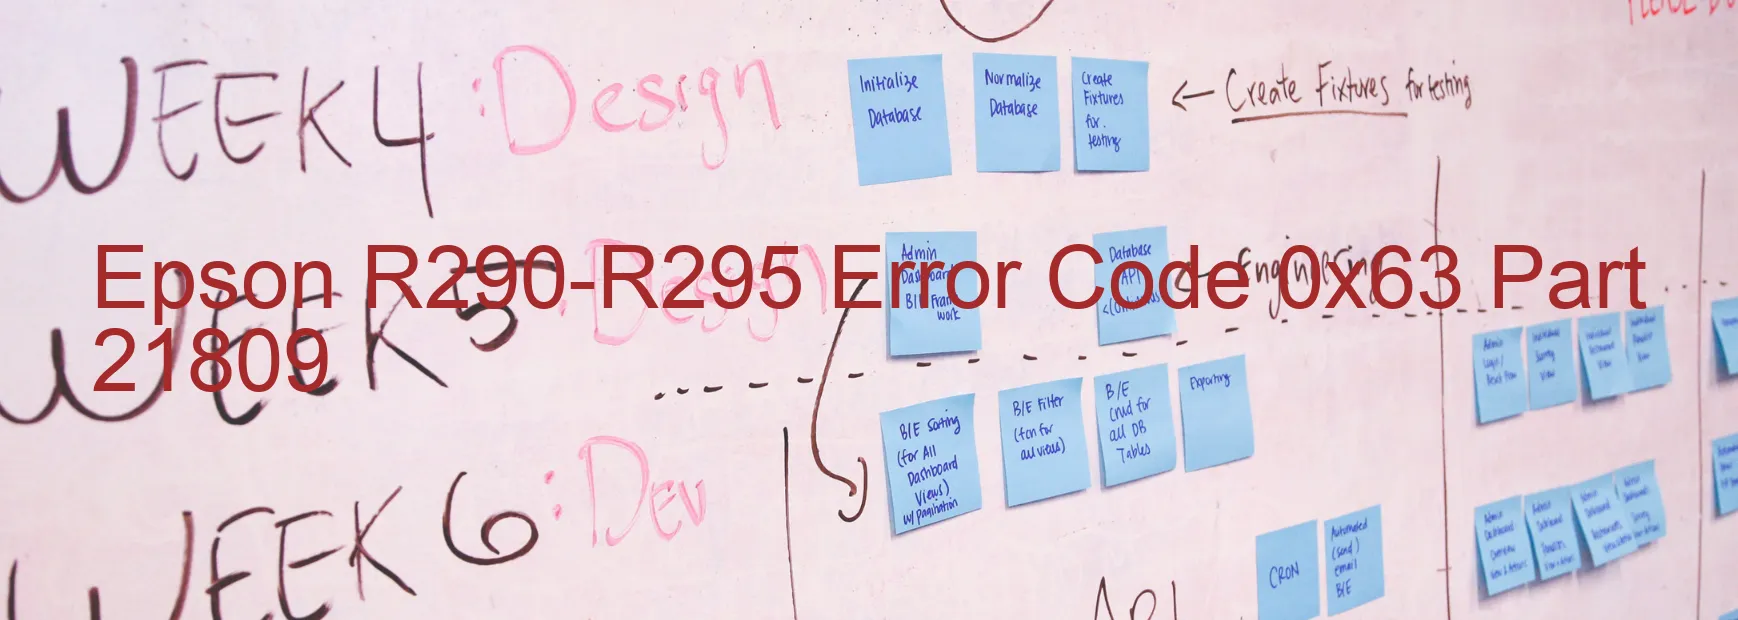 Epson R290-R295 Error Code 0x63 Part 21809